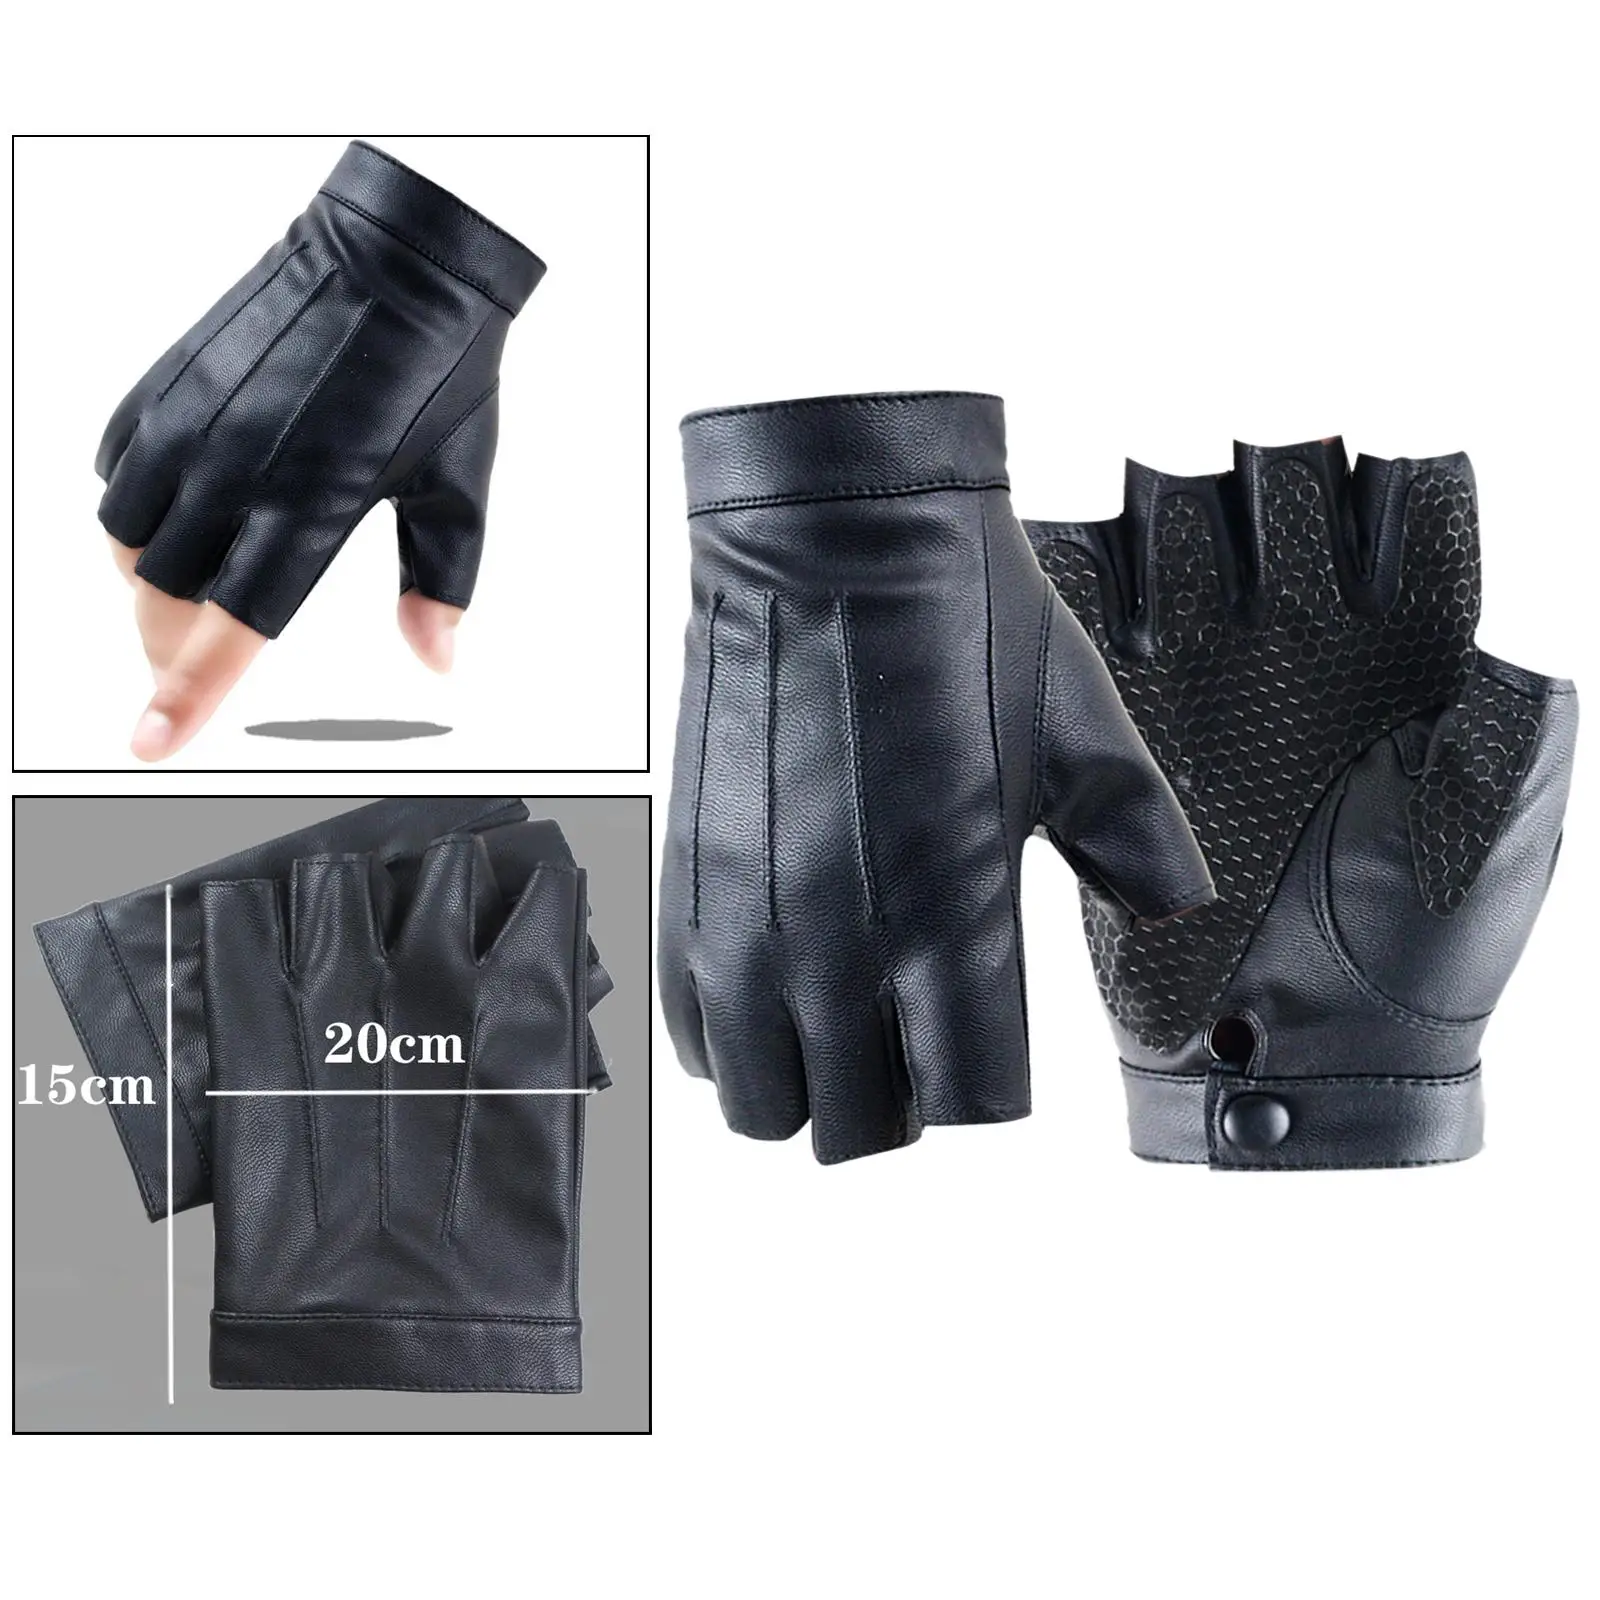 PU Leather Gloves Protection Non Slip Half Finger Gloves for Women Men